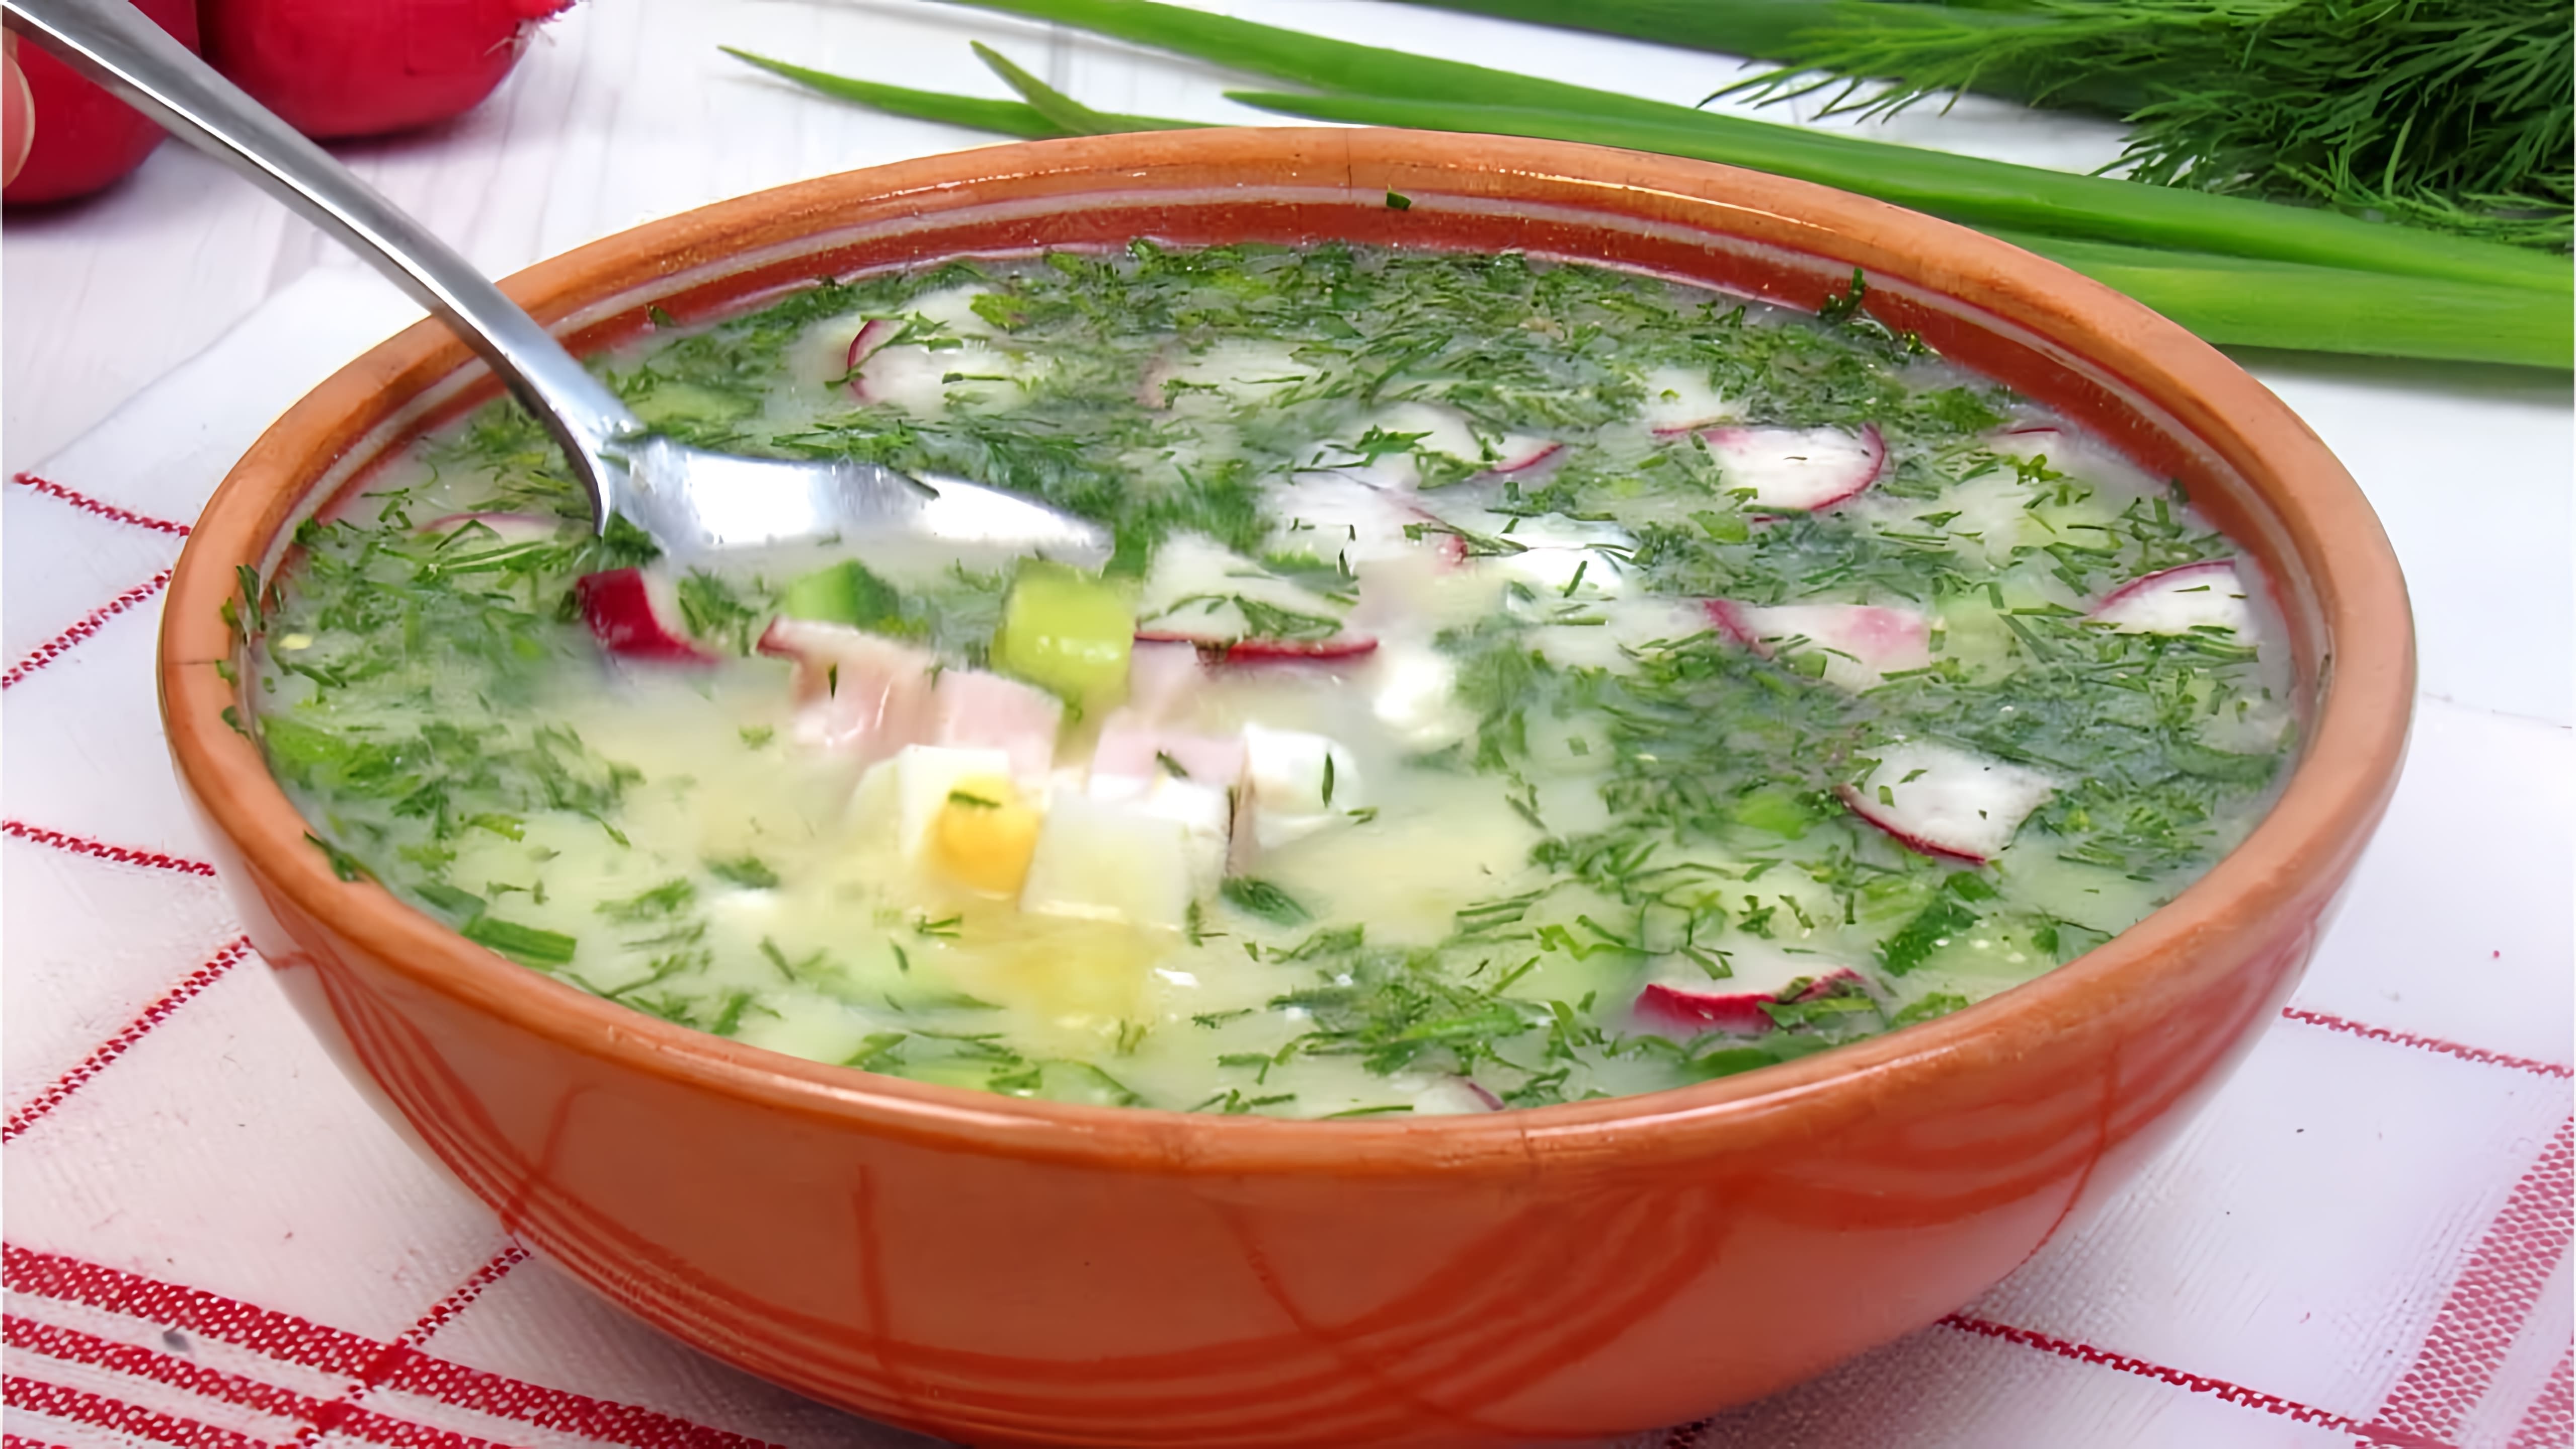 Окрошка на квасе ☆ Вкуснейший летний холодный суп ☆ Простой рецепт Как приготовить окрошку на квасе